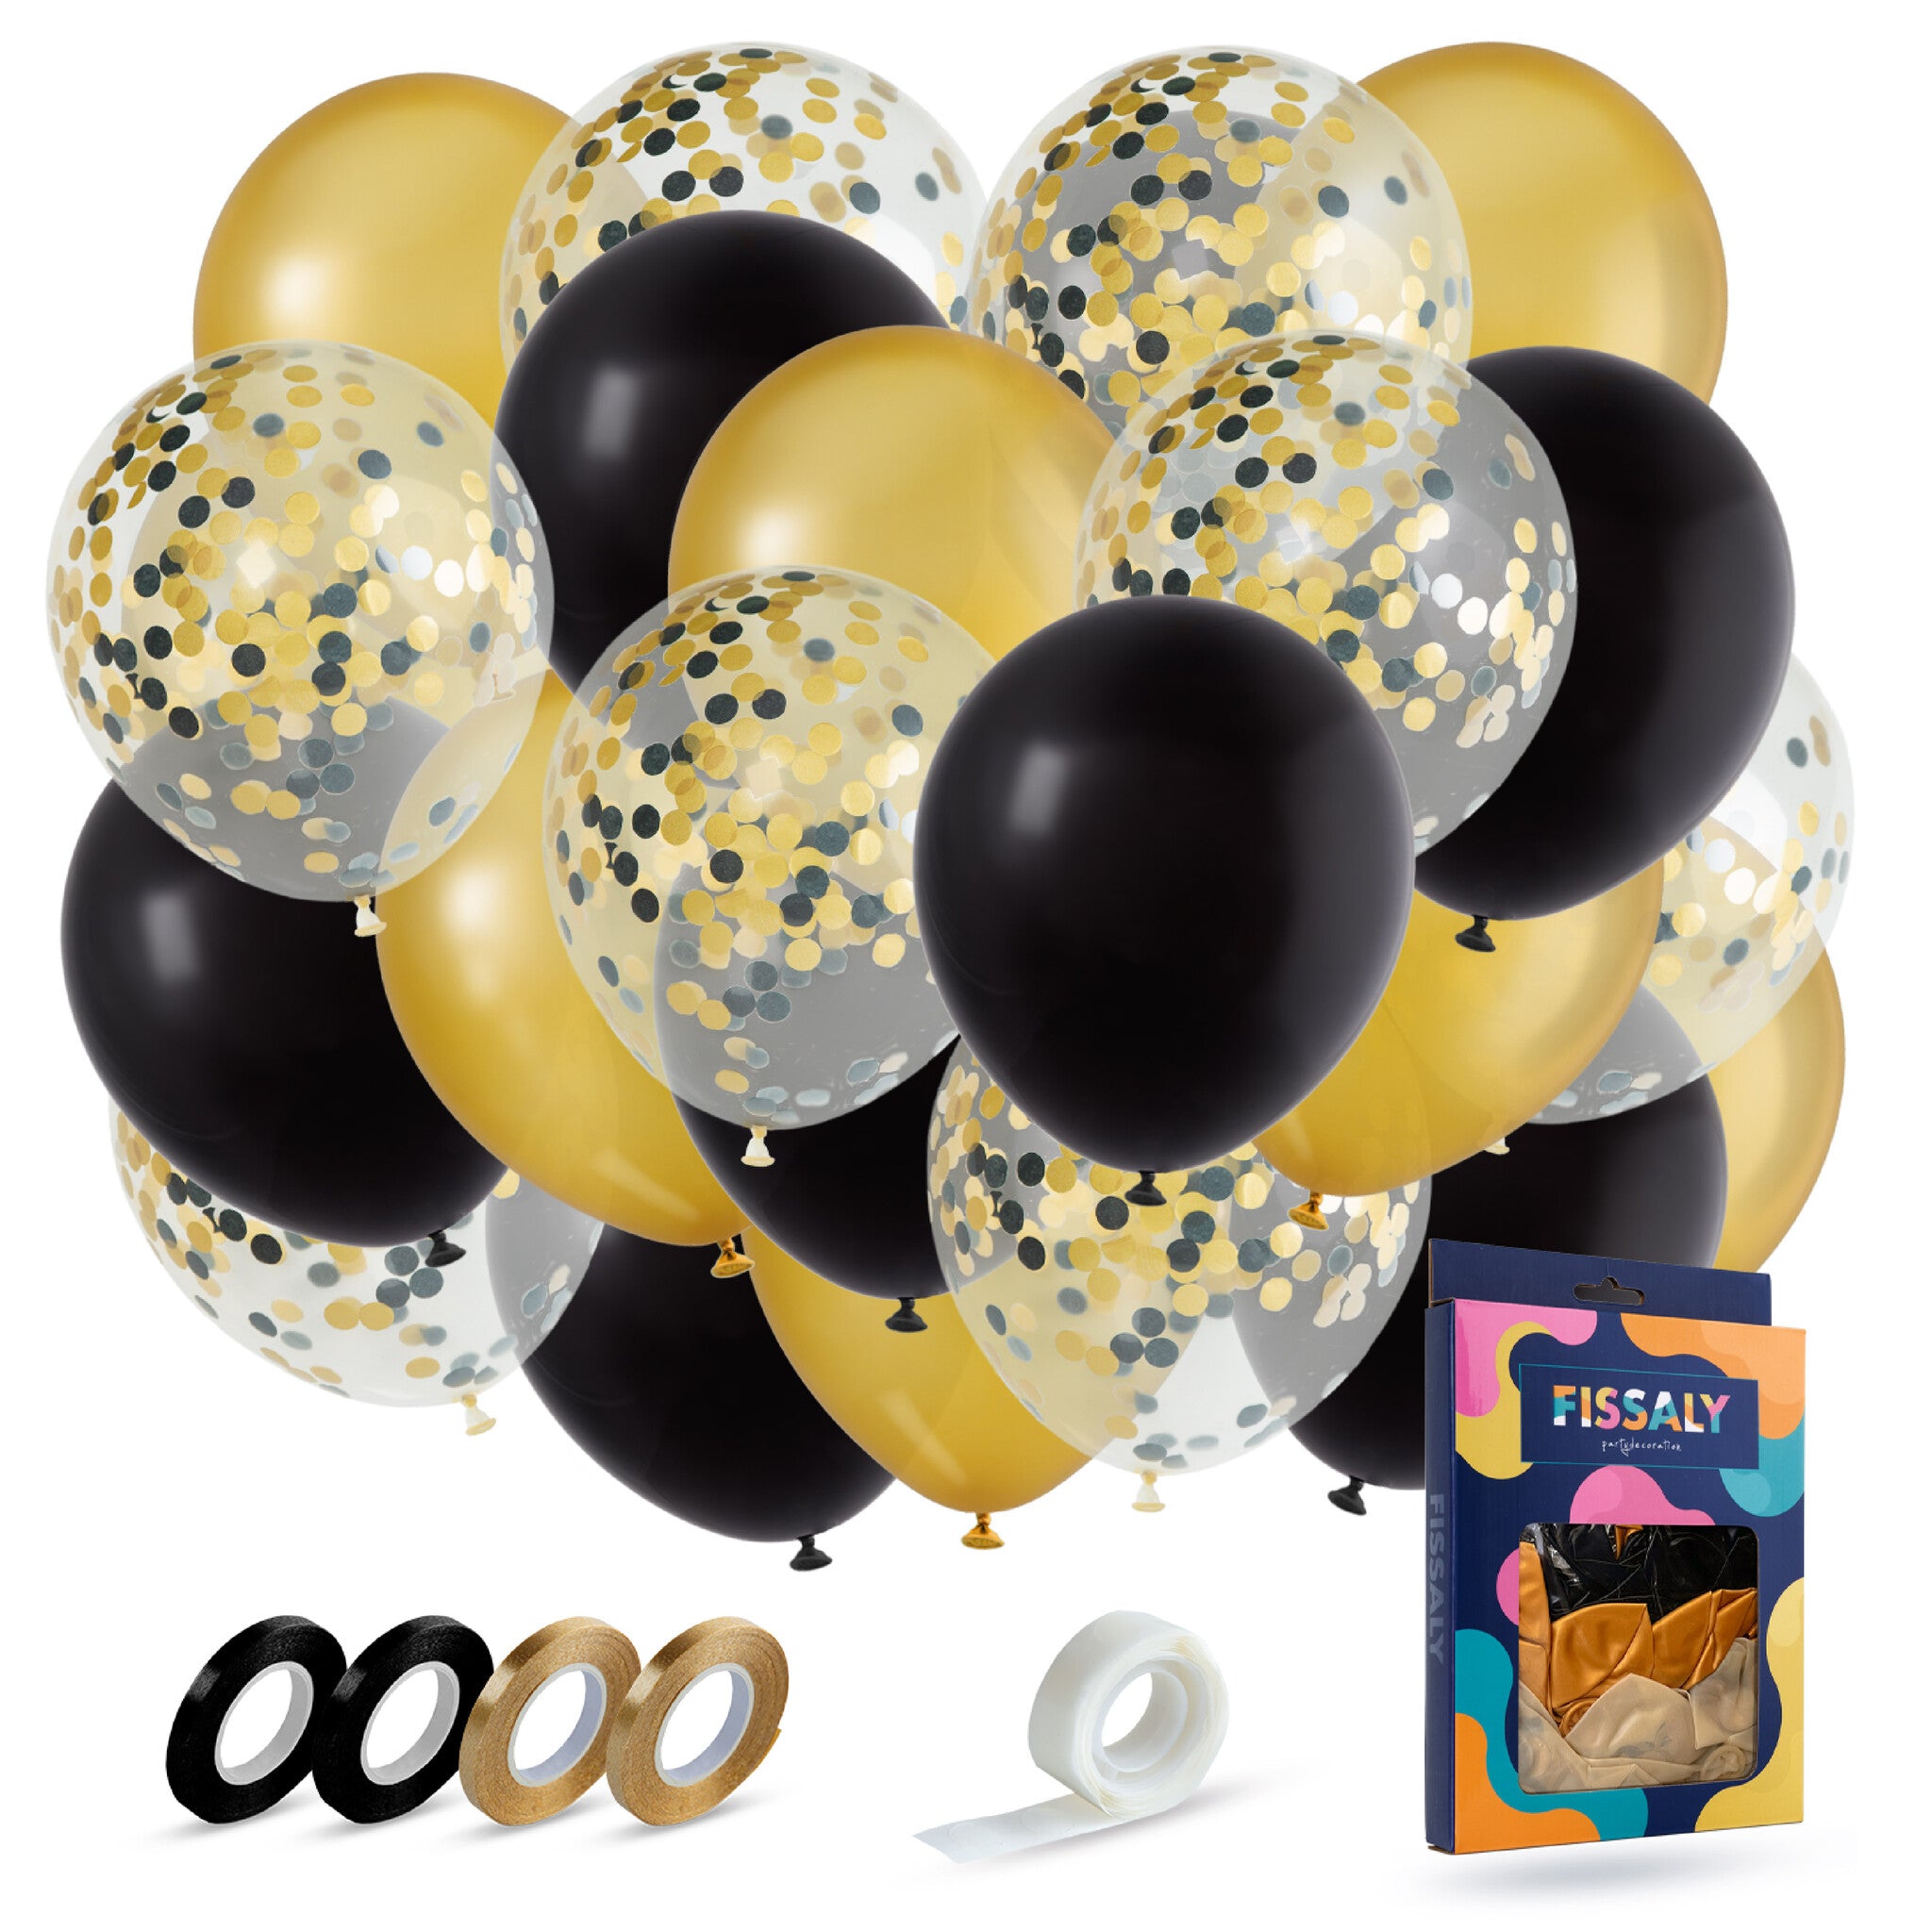 40 Stuks Goud, Zwart & Papieren Confetti Ballonnen